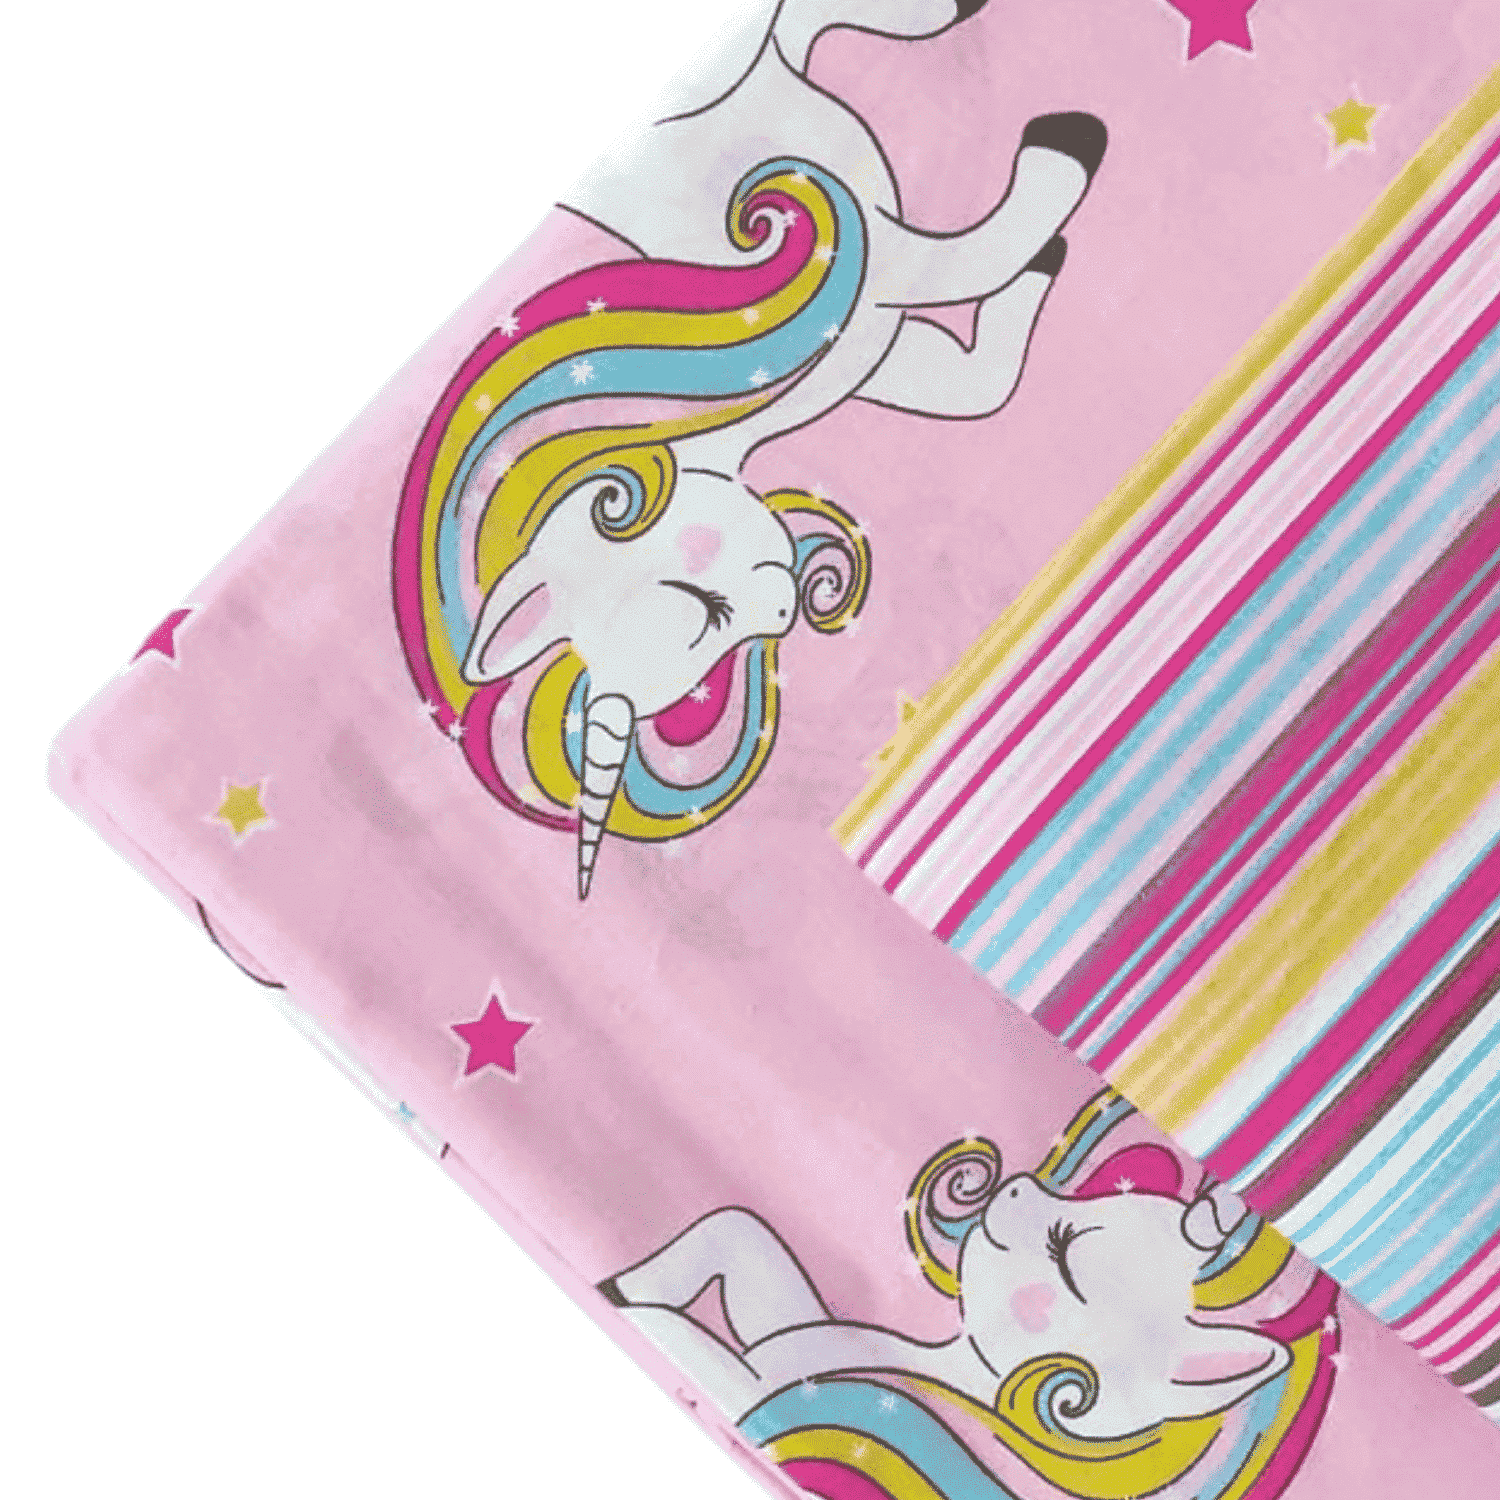 unicorni-completo-lenzuola-puro-cotone-made-in-italy-quadrifoglio-rosa-unicorni-arcobaleno-bambina-bimba-una-piazza-moderno-cartoni-animati-dettaglio